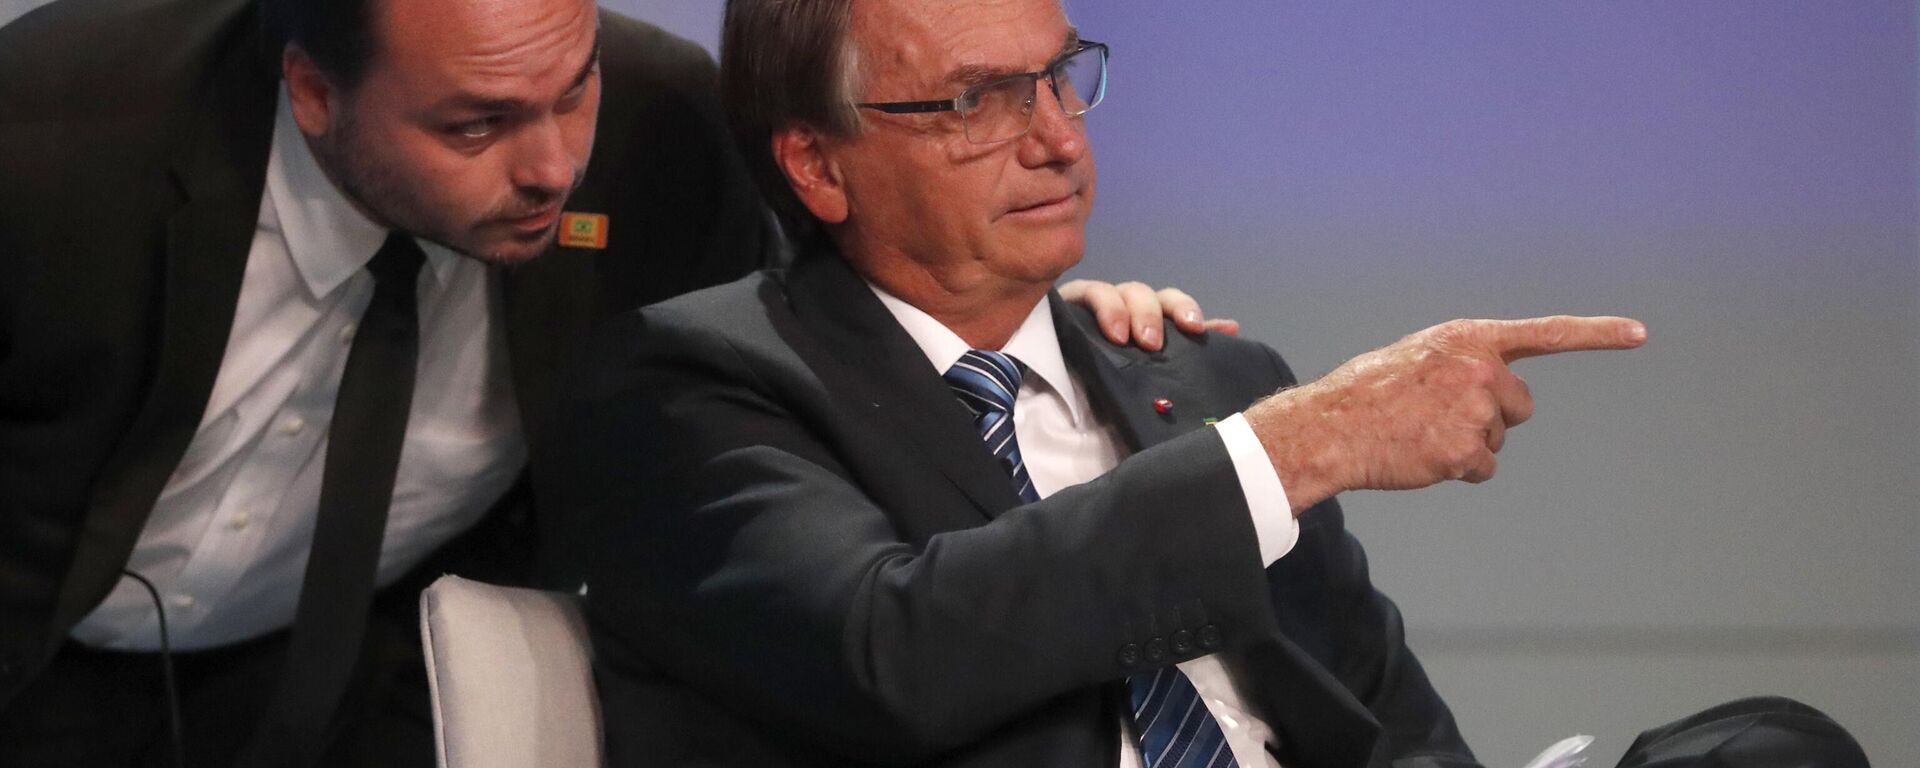 Carlos Bolsonaro, hijo del presidente de Brasil en 2019-2022, Jair Bolsonaro, junto con su padre - Sputnik Mundo, 1920, 29.01.2024